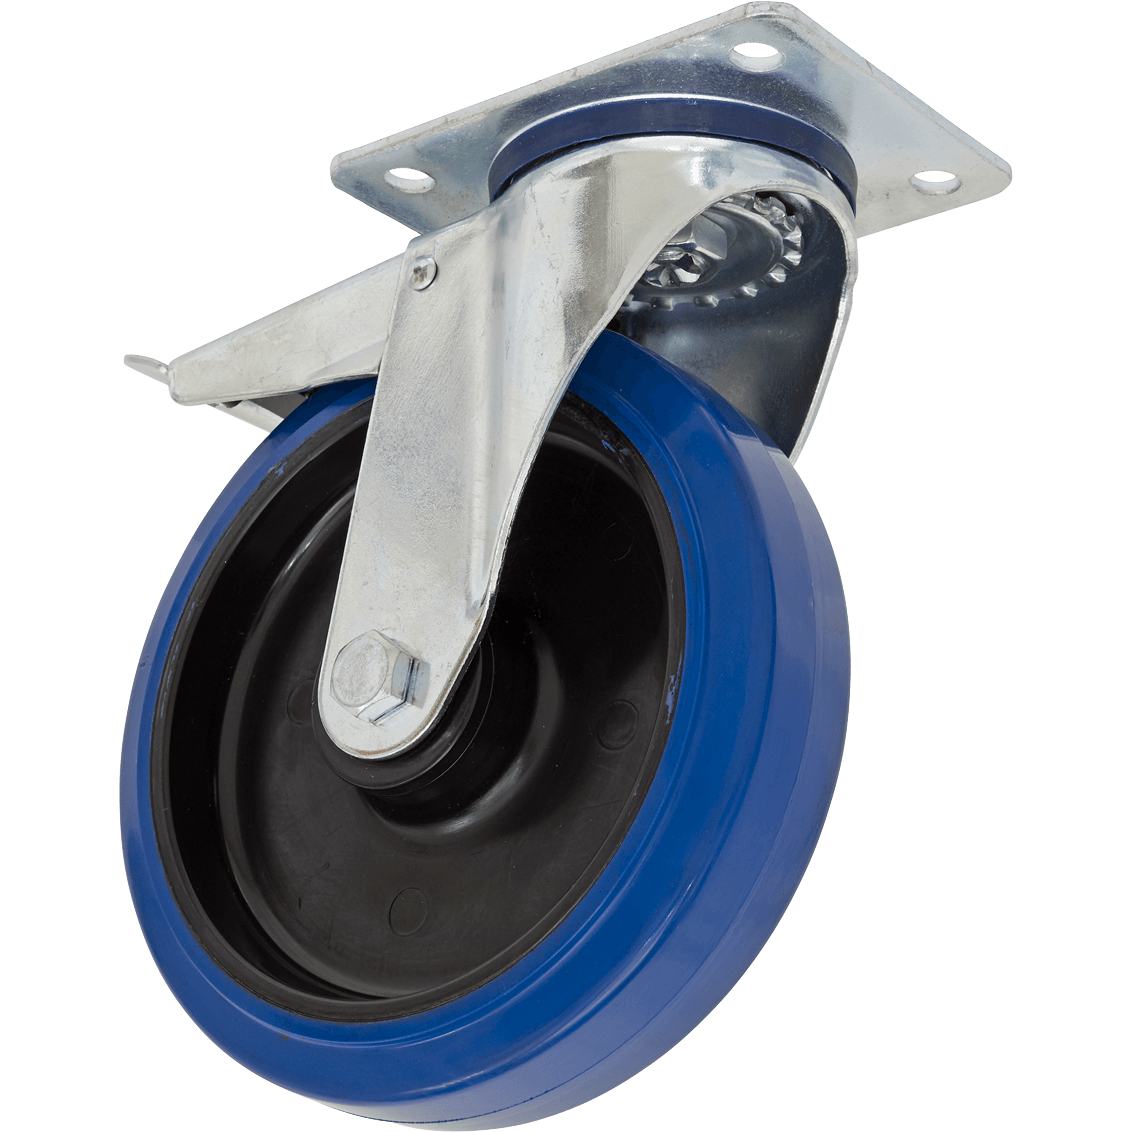 Sealey Heavy-Duty Blue Elastic Rubber Swivel Castor Wheel and Total Lock 200mm